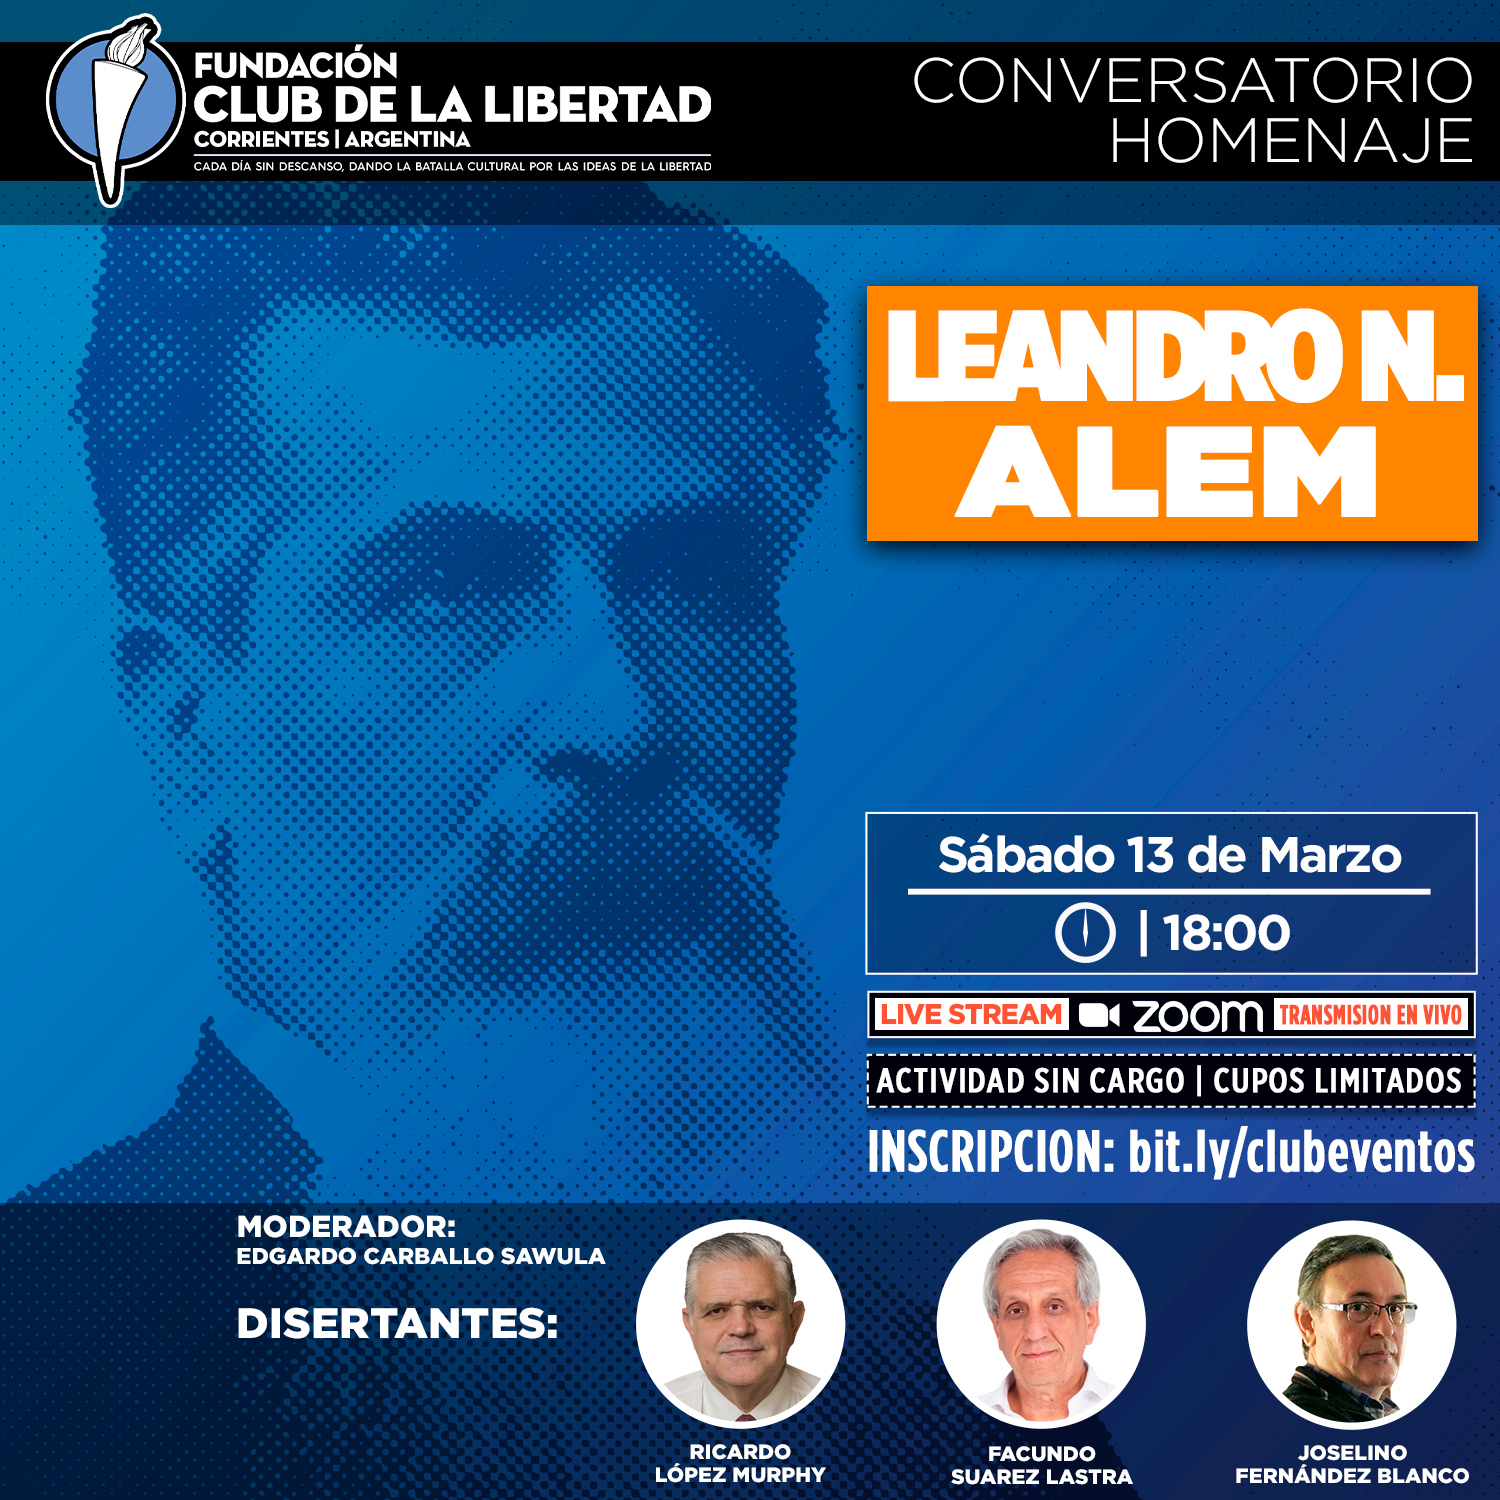 En este momento estás viendo Conversatorio Homenaje Leandro N. Alem